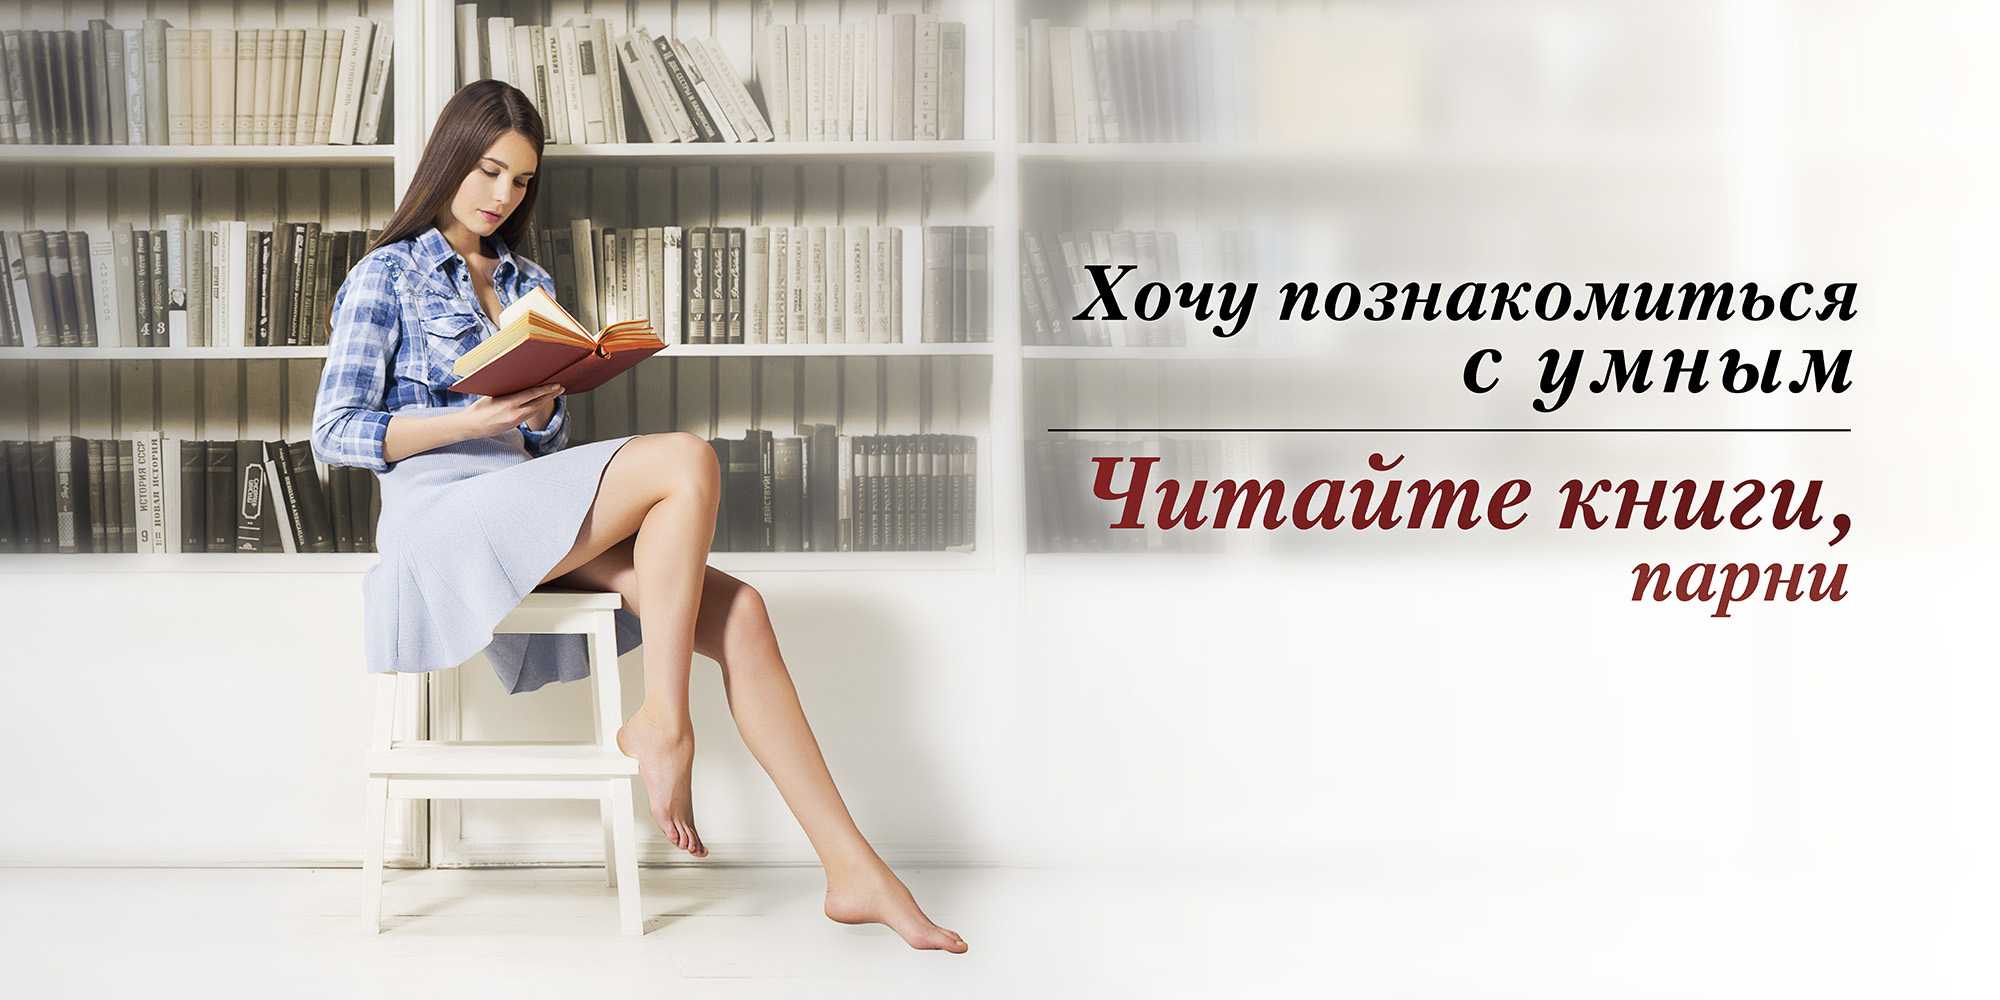 Прочитать интересное о жизни. Реклама книги. Призыв к чтению. Социальная реклама библиотеки. Реклама книг в библиотеке.